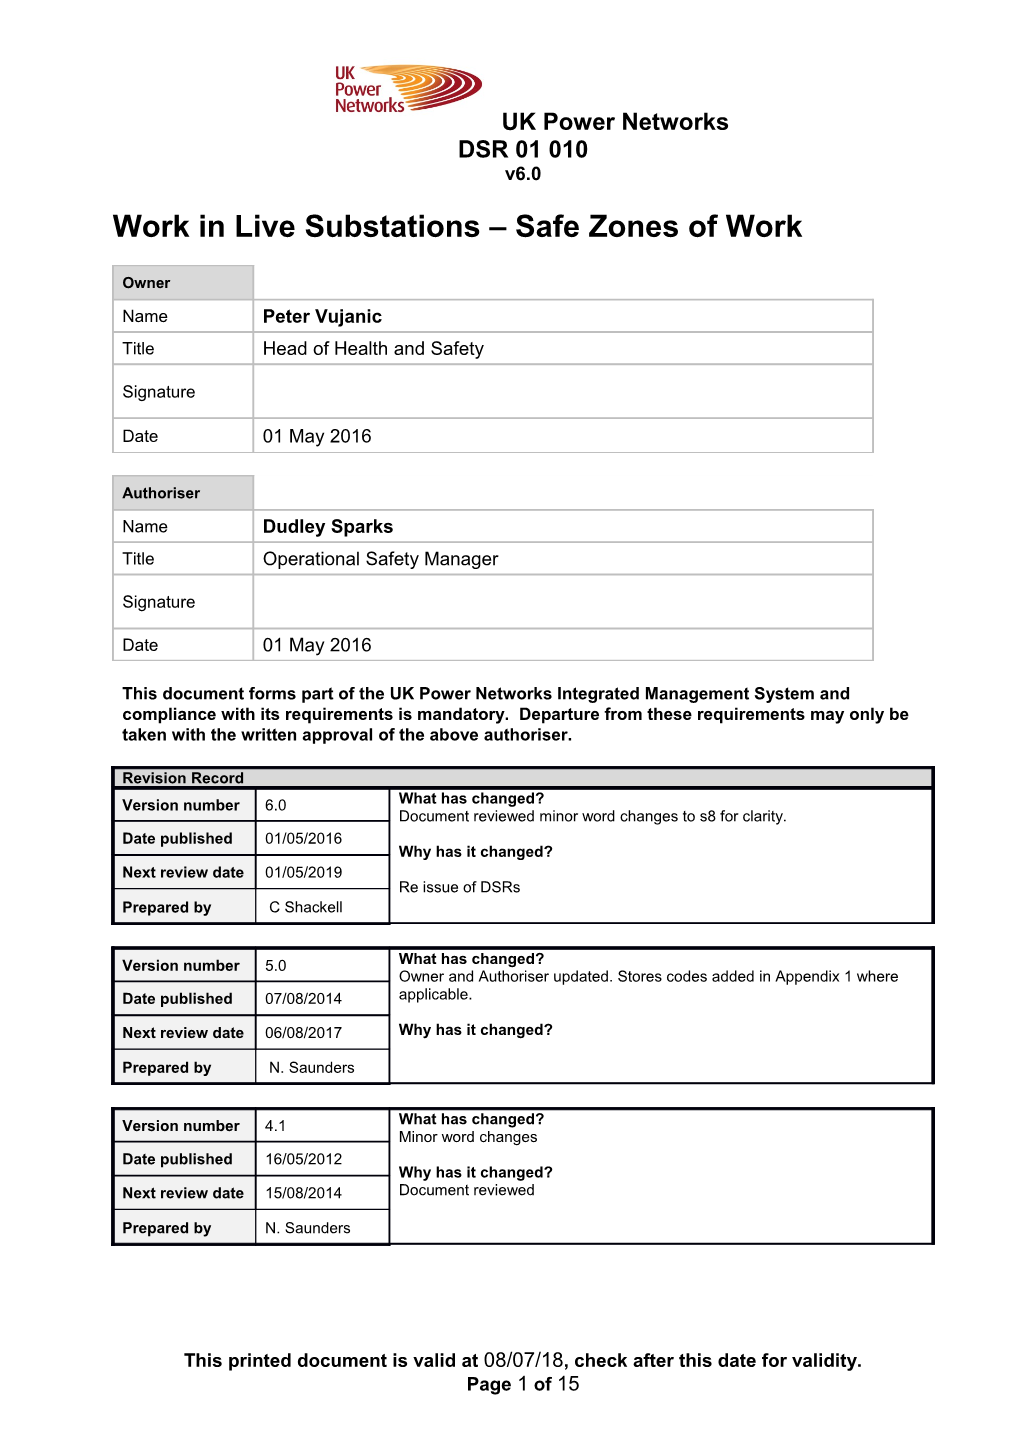 DSR 01 010 Work in Live Substations - Safe Zones of Work